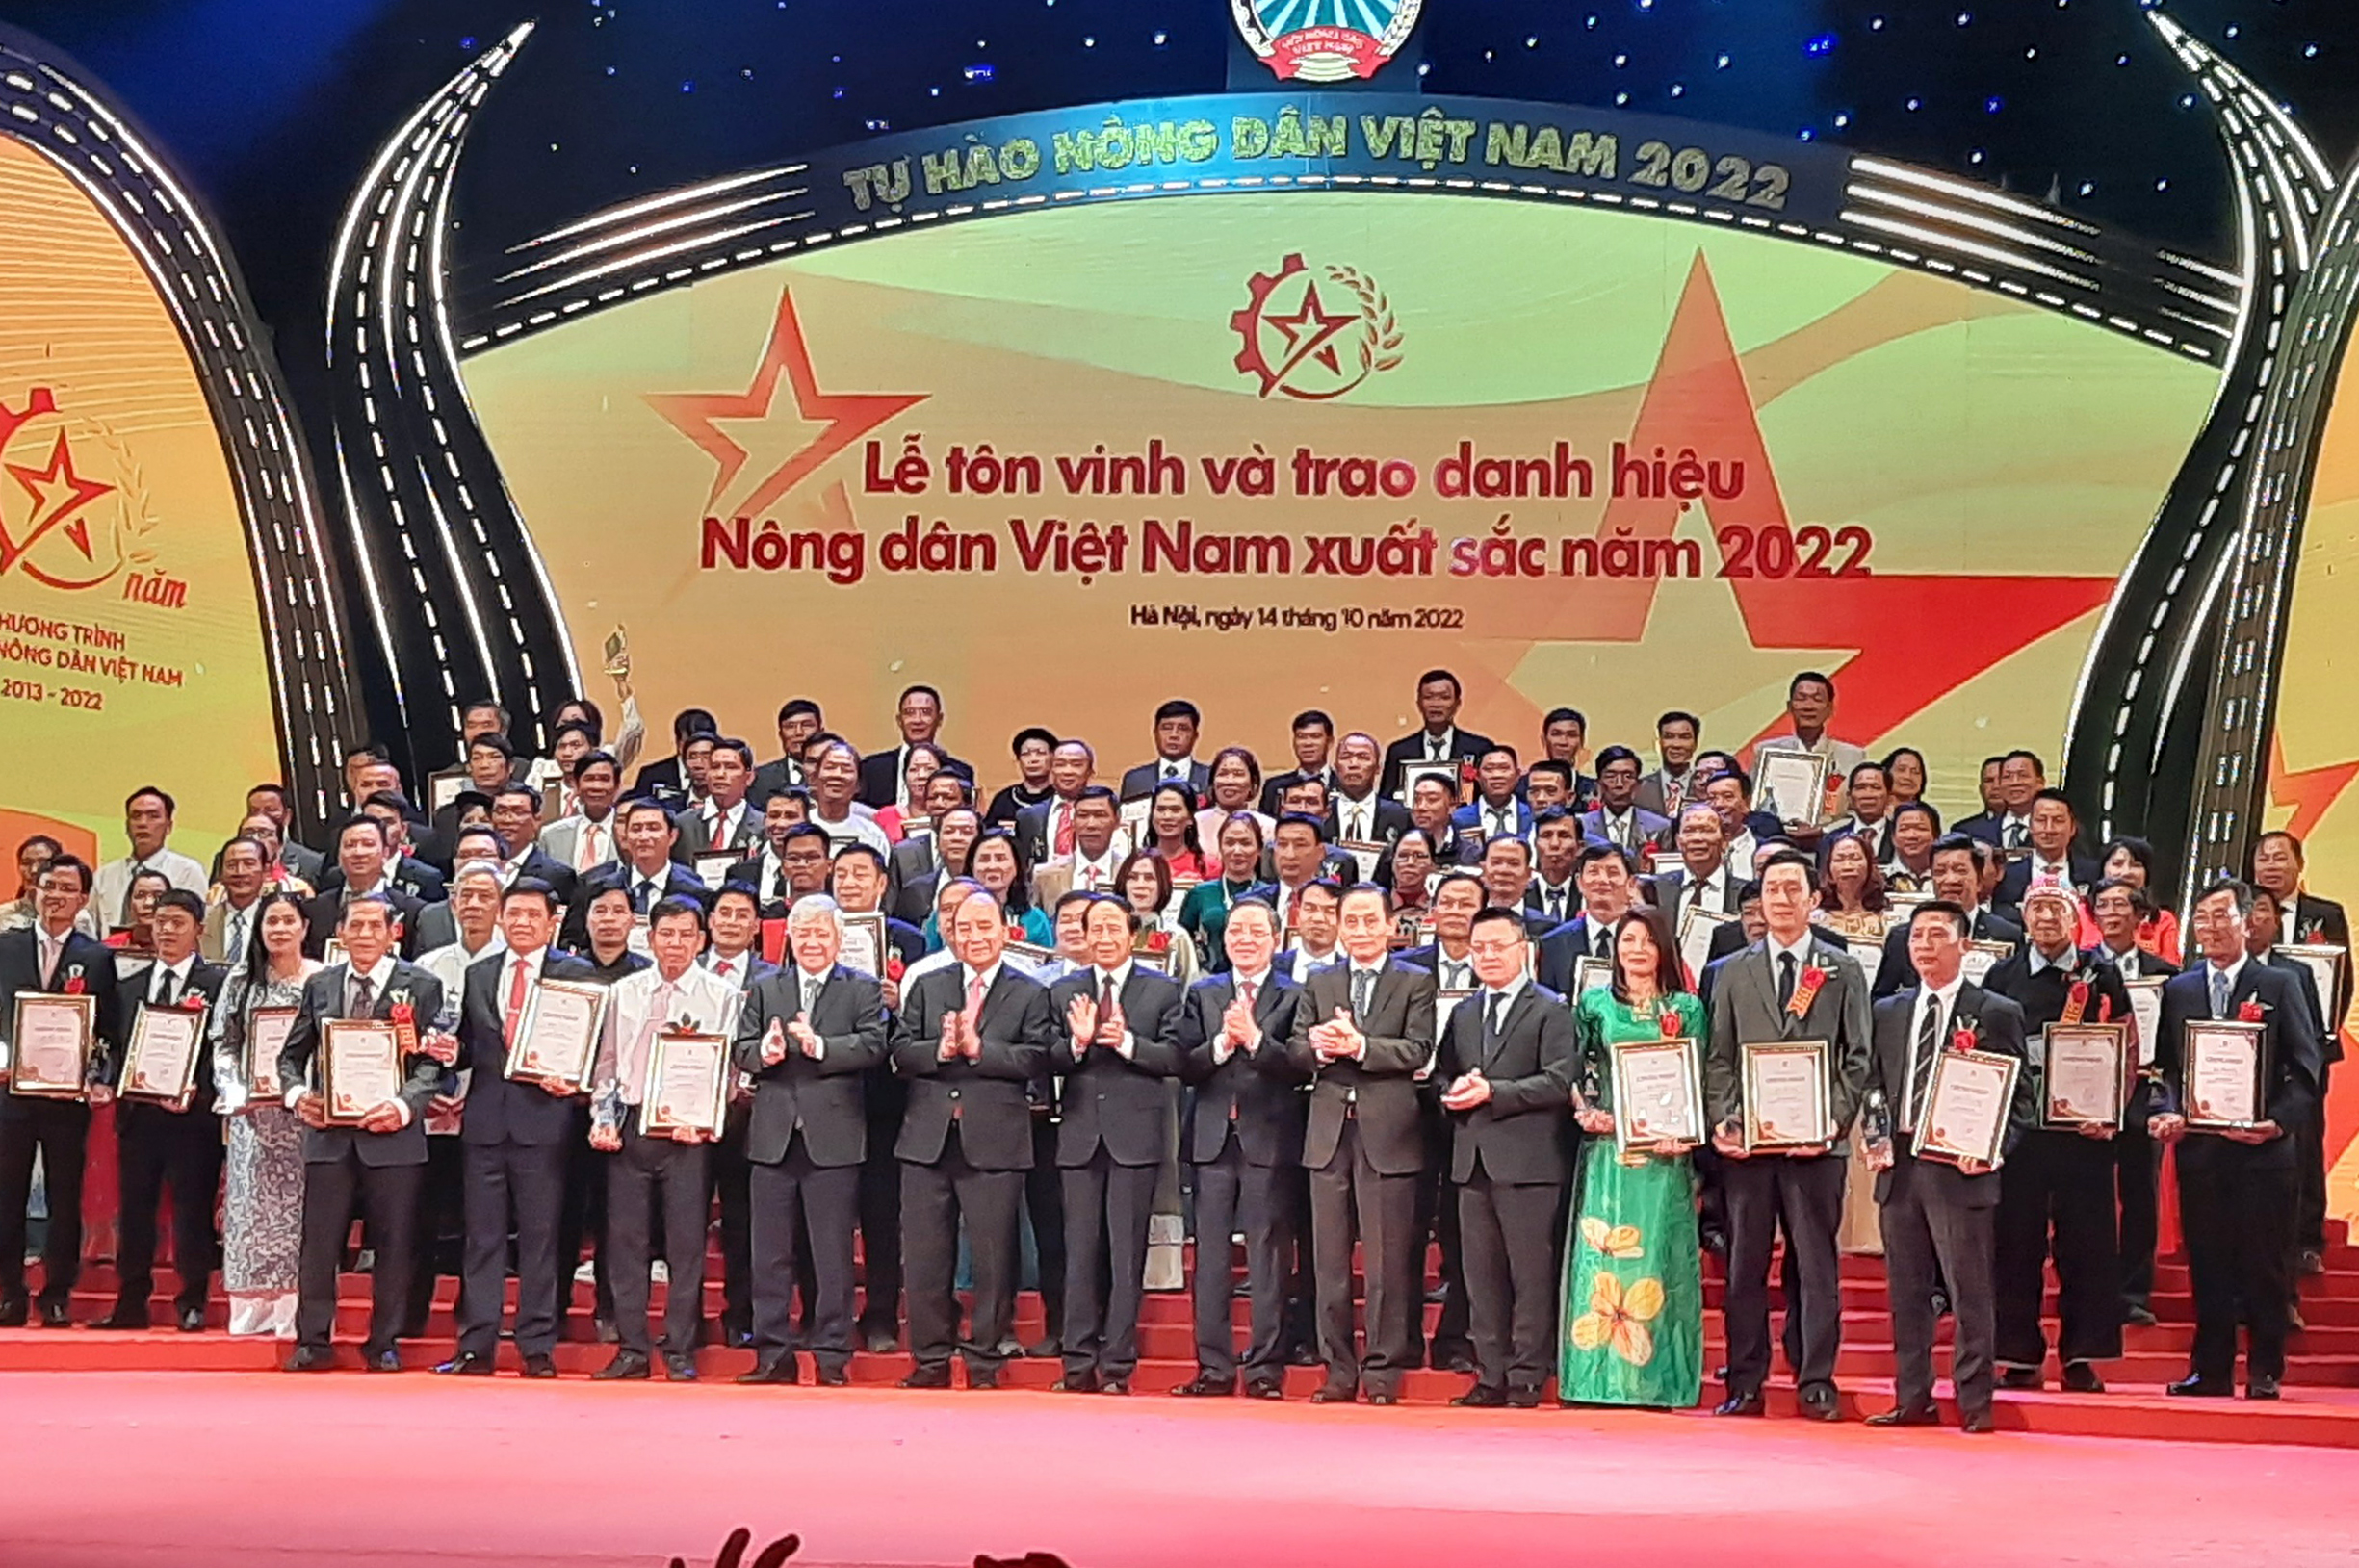 Chủ tịch nước Nguyễn Xuân Phúc và các đồng chí lãnh đạo Đảng, Nhà nước chụp ảnh lưu niệm cùng 100 nông dân Việt Nam xuất sắc năm 2022